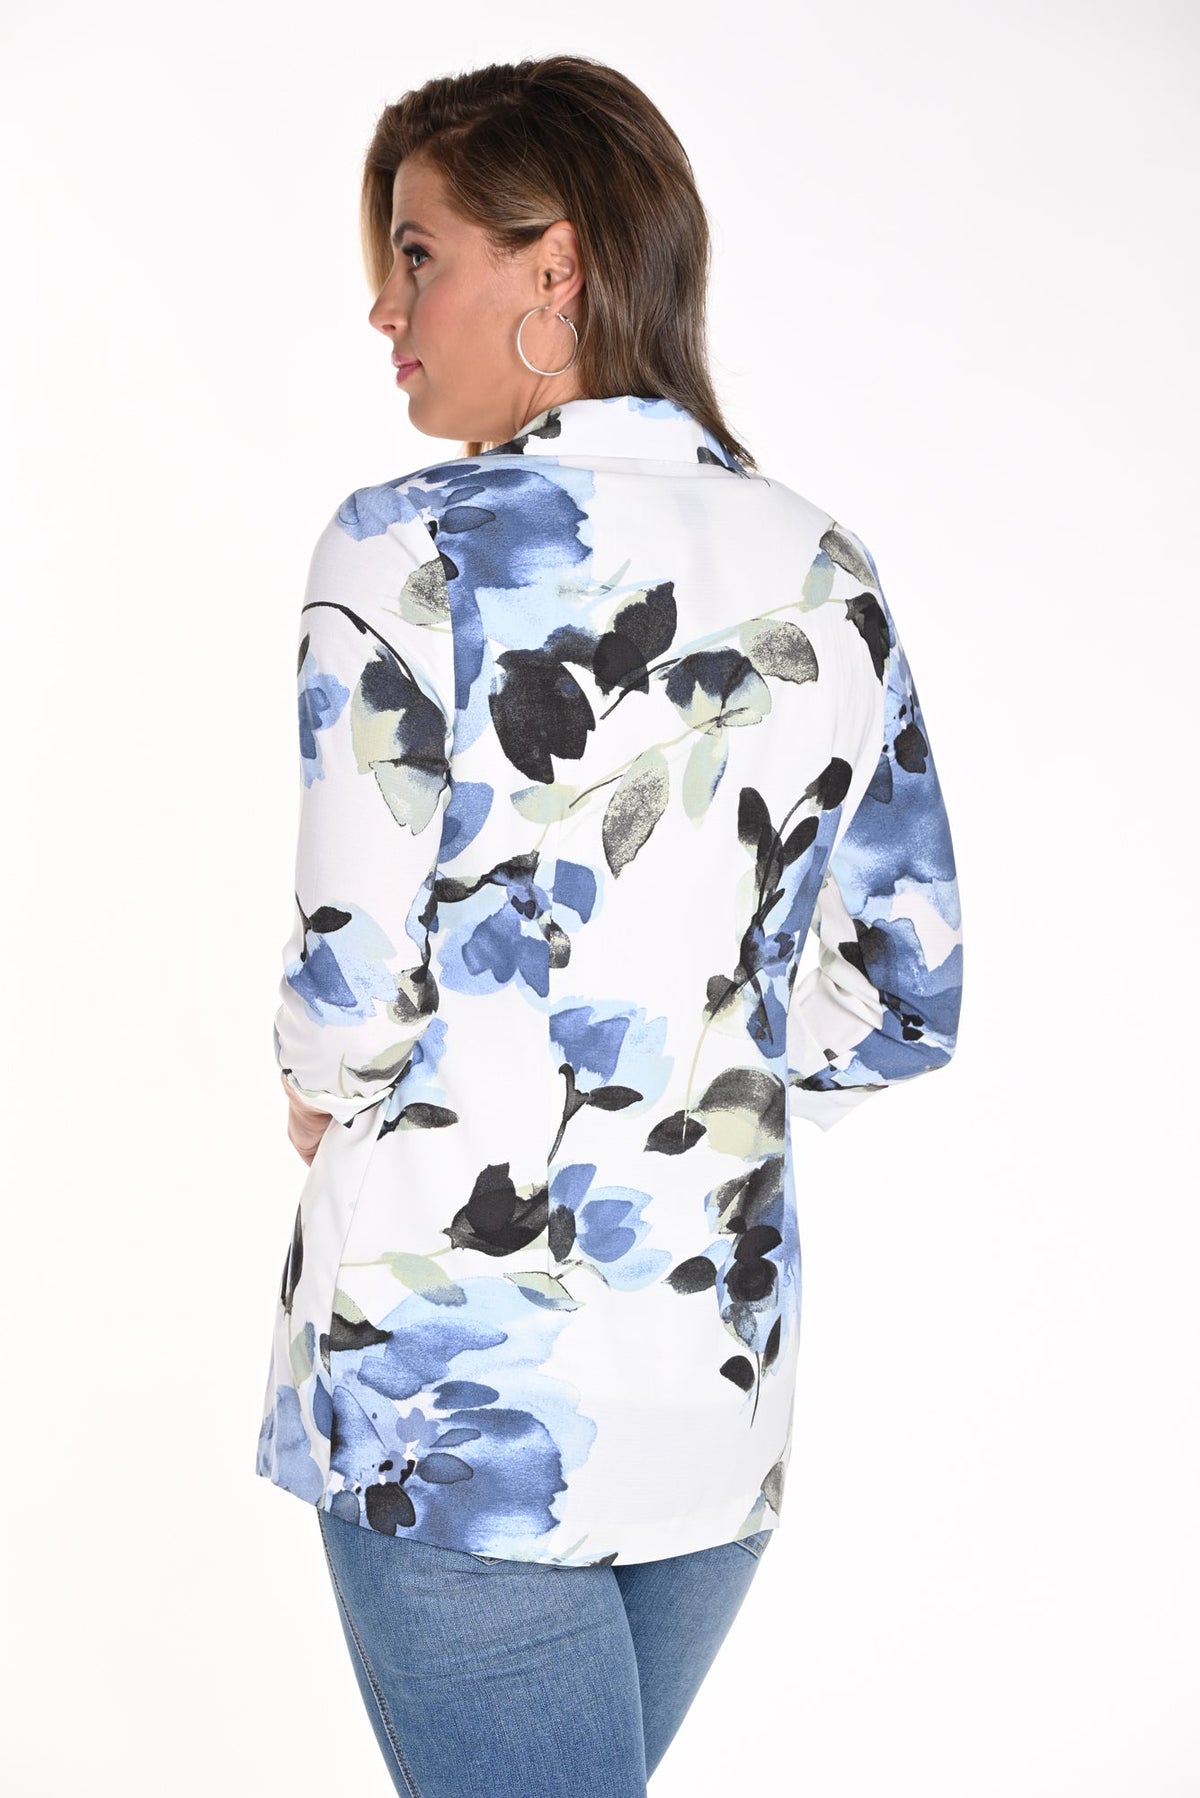 Veston pour femme par Frank Lyman | 241466 OFF WHITE/BLUE/2014 | Boutique Vvög, vêtements mode pour homme et femme